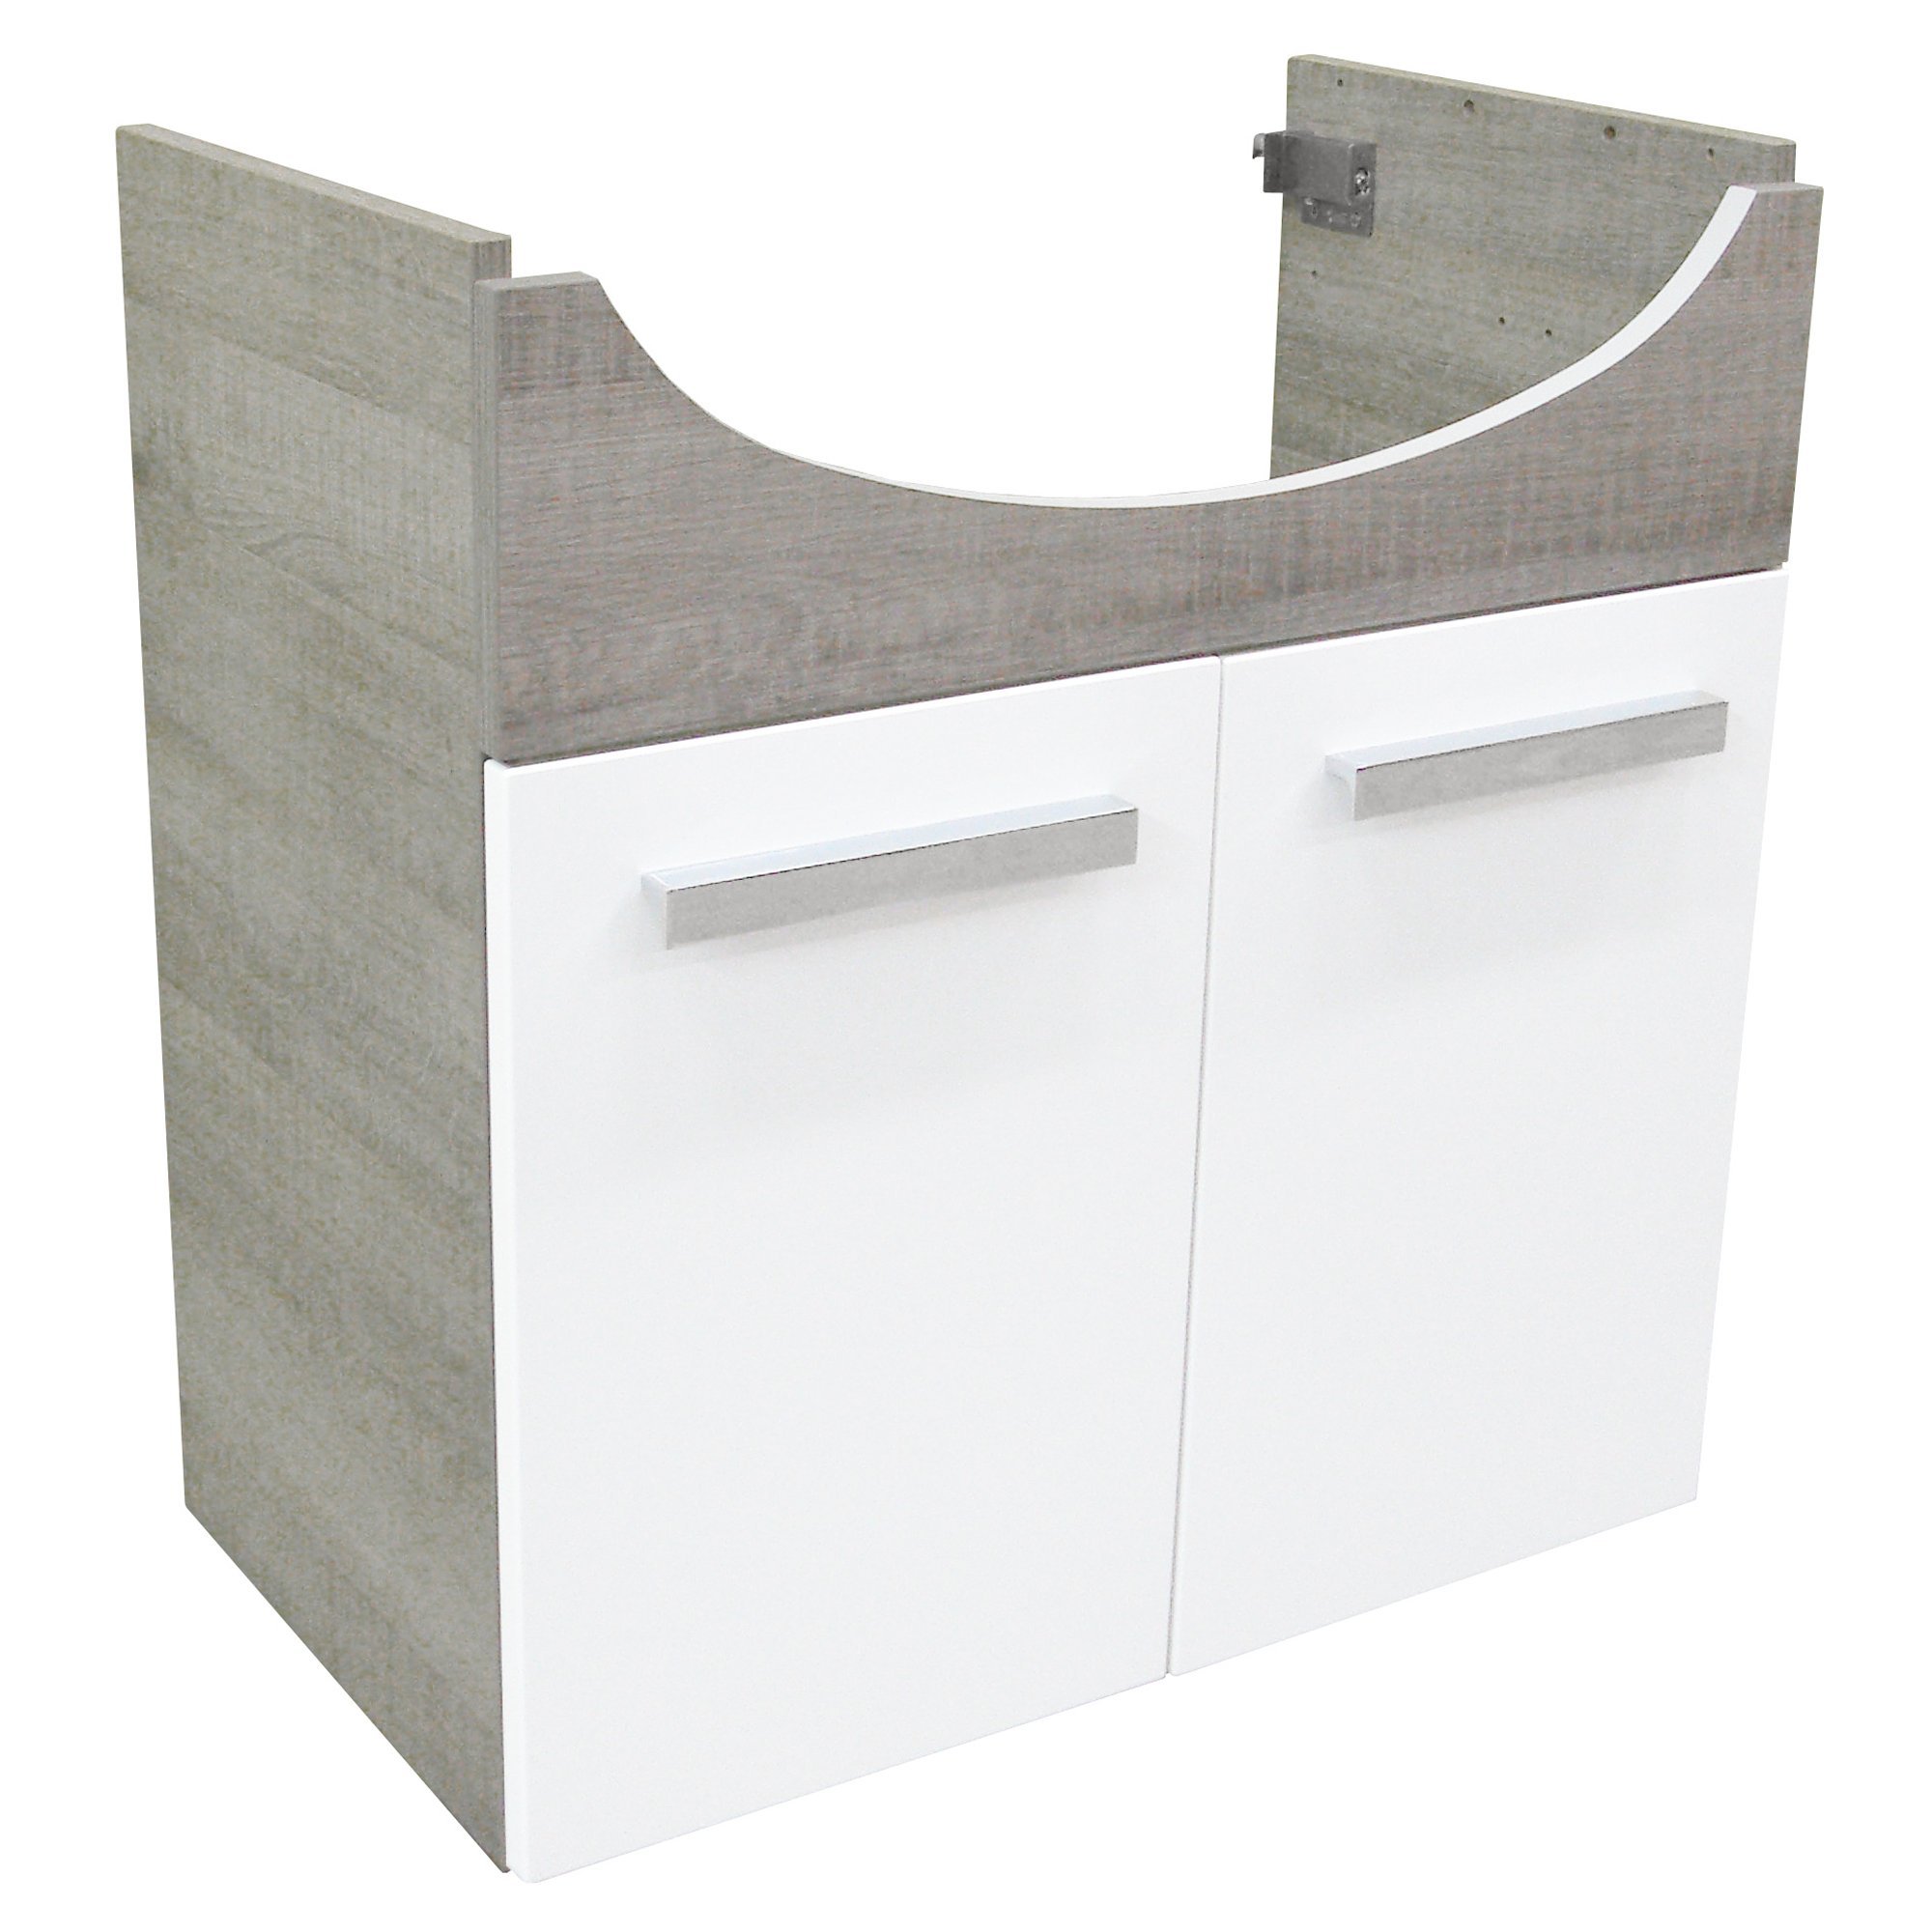 Waschtisch-Unterschrank 'A-Vero' Eiche grau/weiß 63 x 64 x 35 cm + product picture